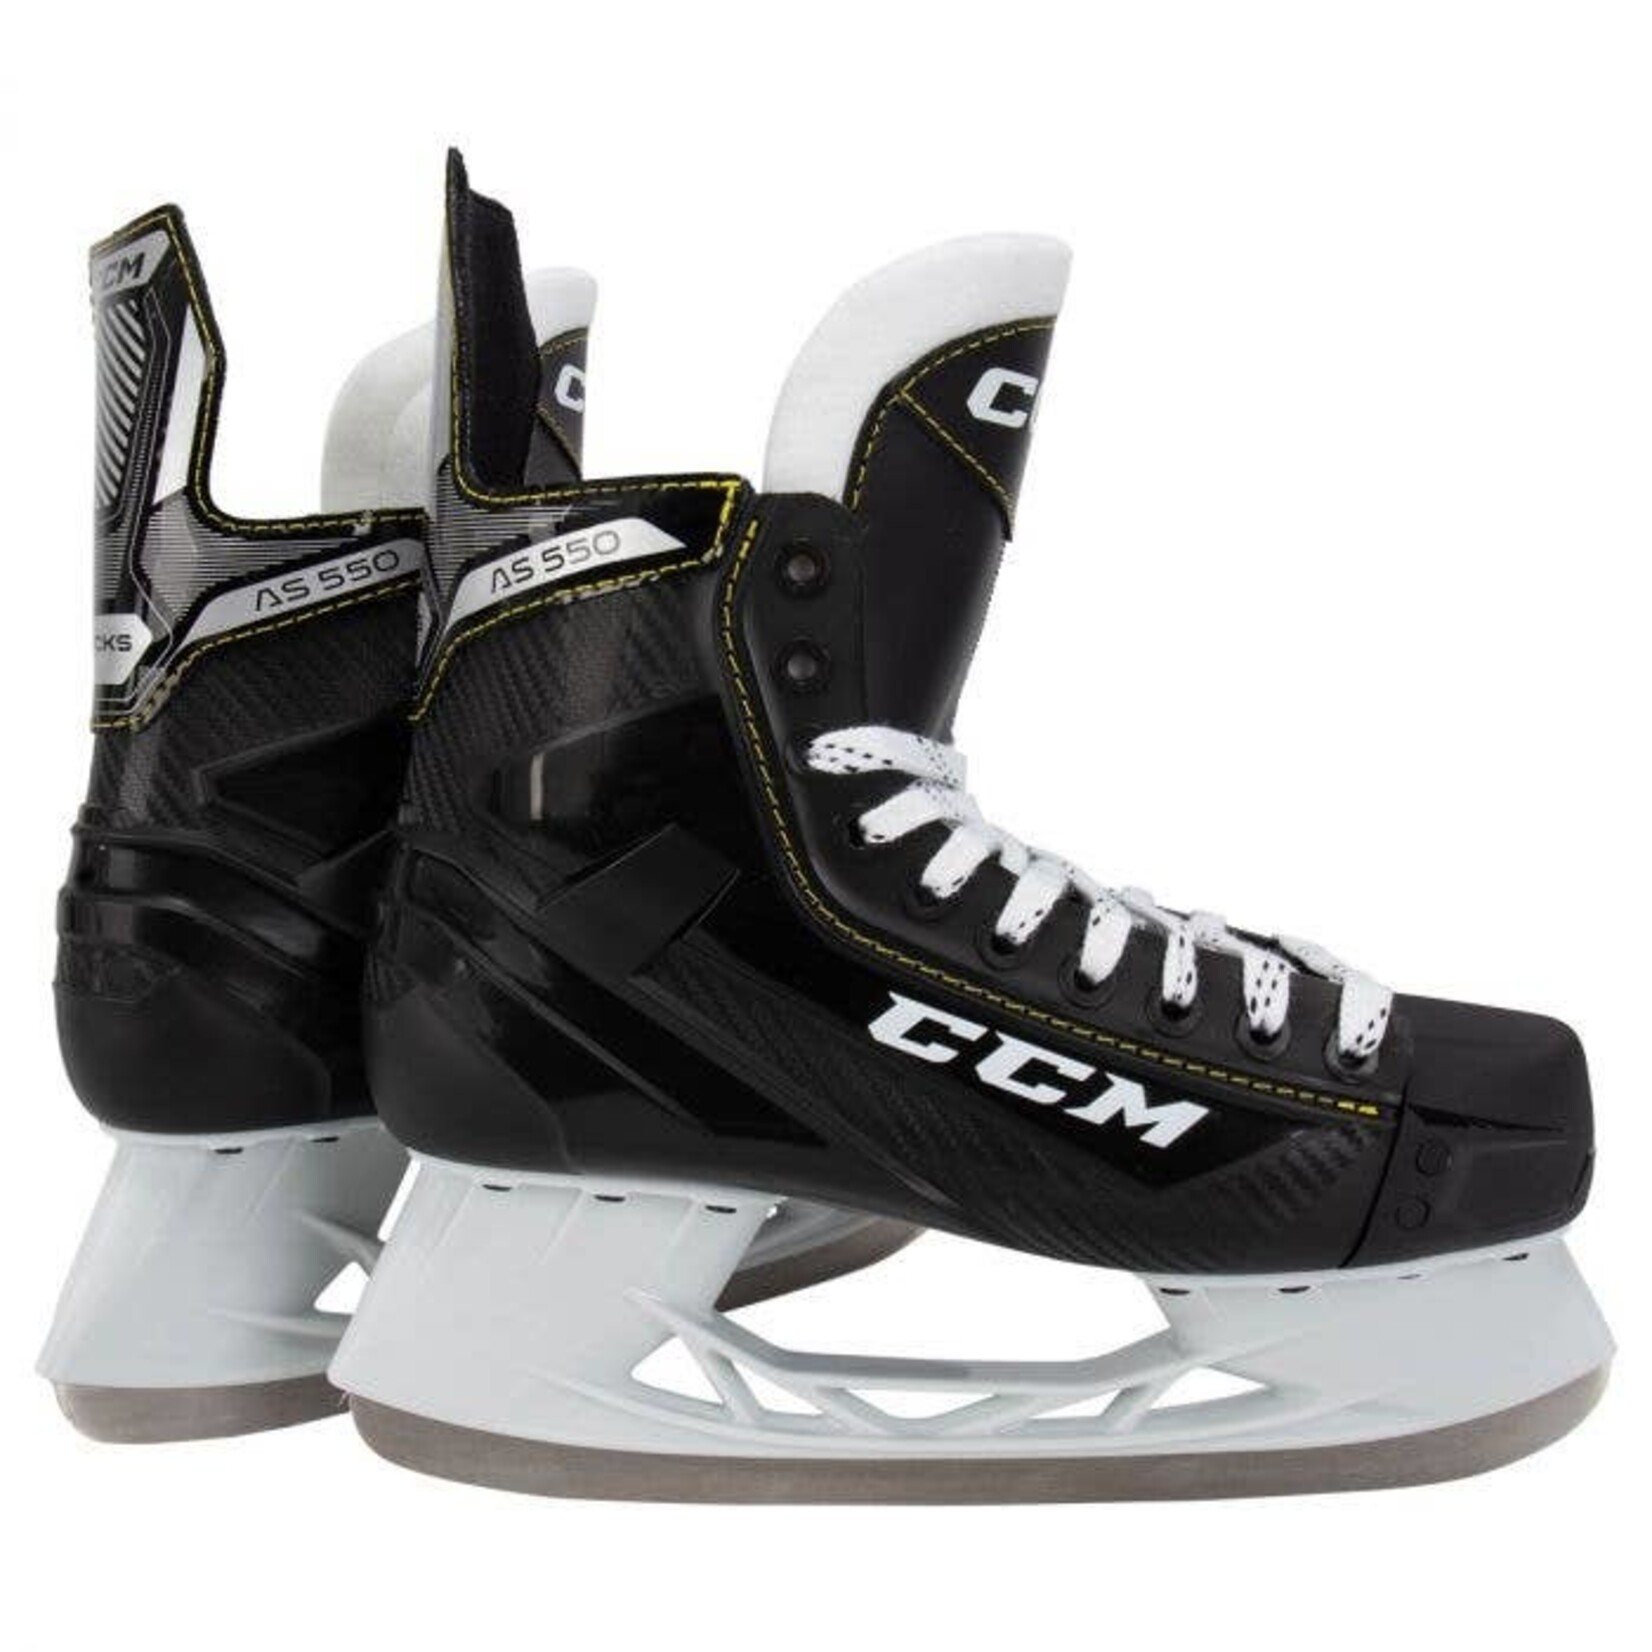 CCM CCM Hockey Skates, Tacks AS-550, Senior